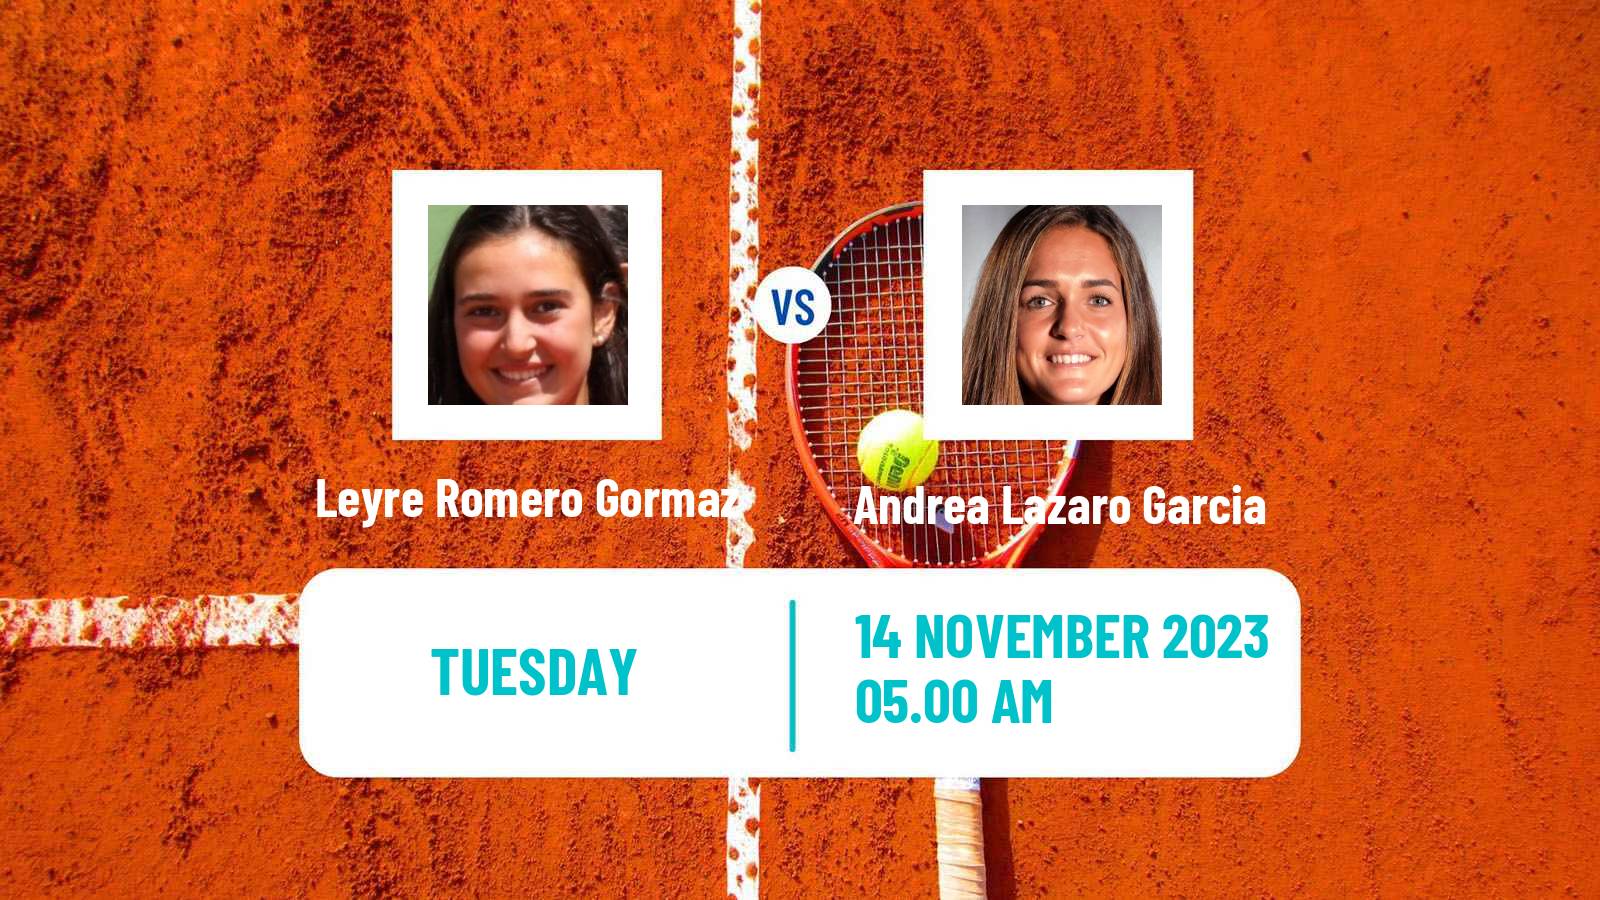 Tennis ITF W25 Heraklion 2 Women 2023 Leyre Romero Gormaz - Andrea Lazaro Garcia